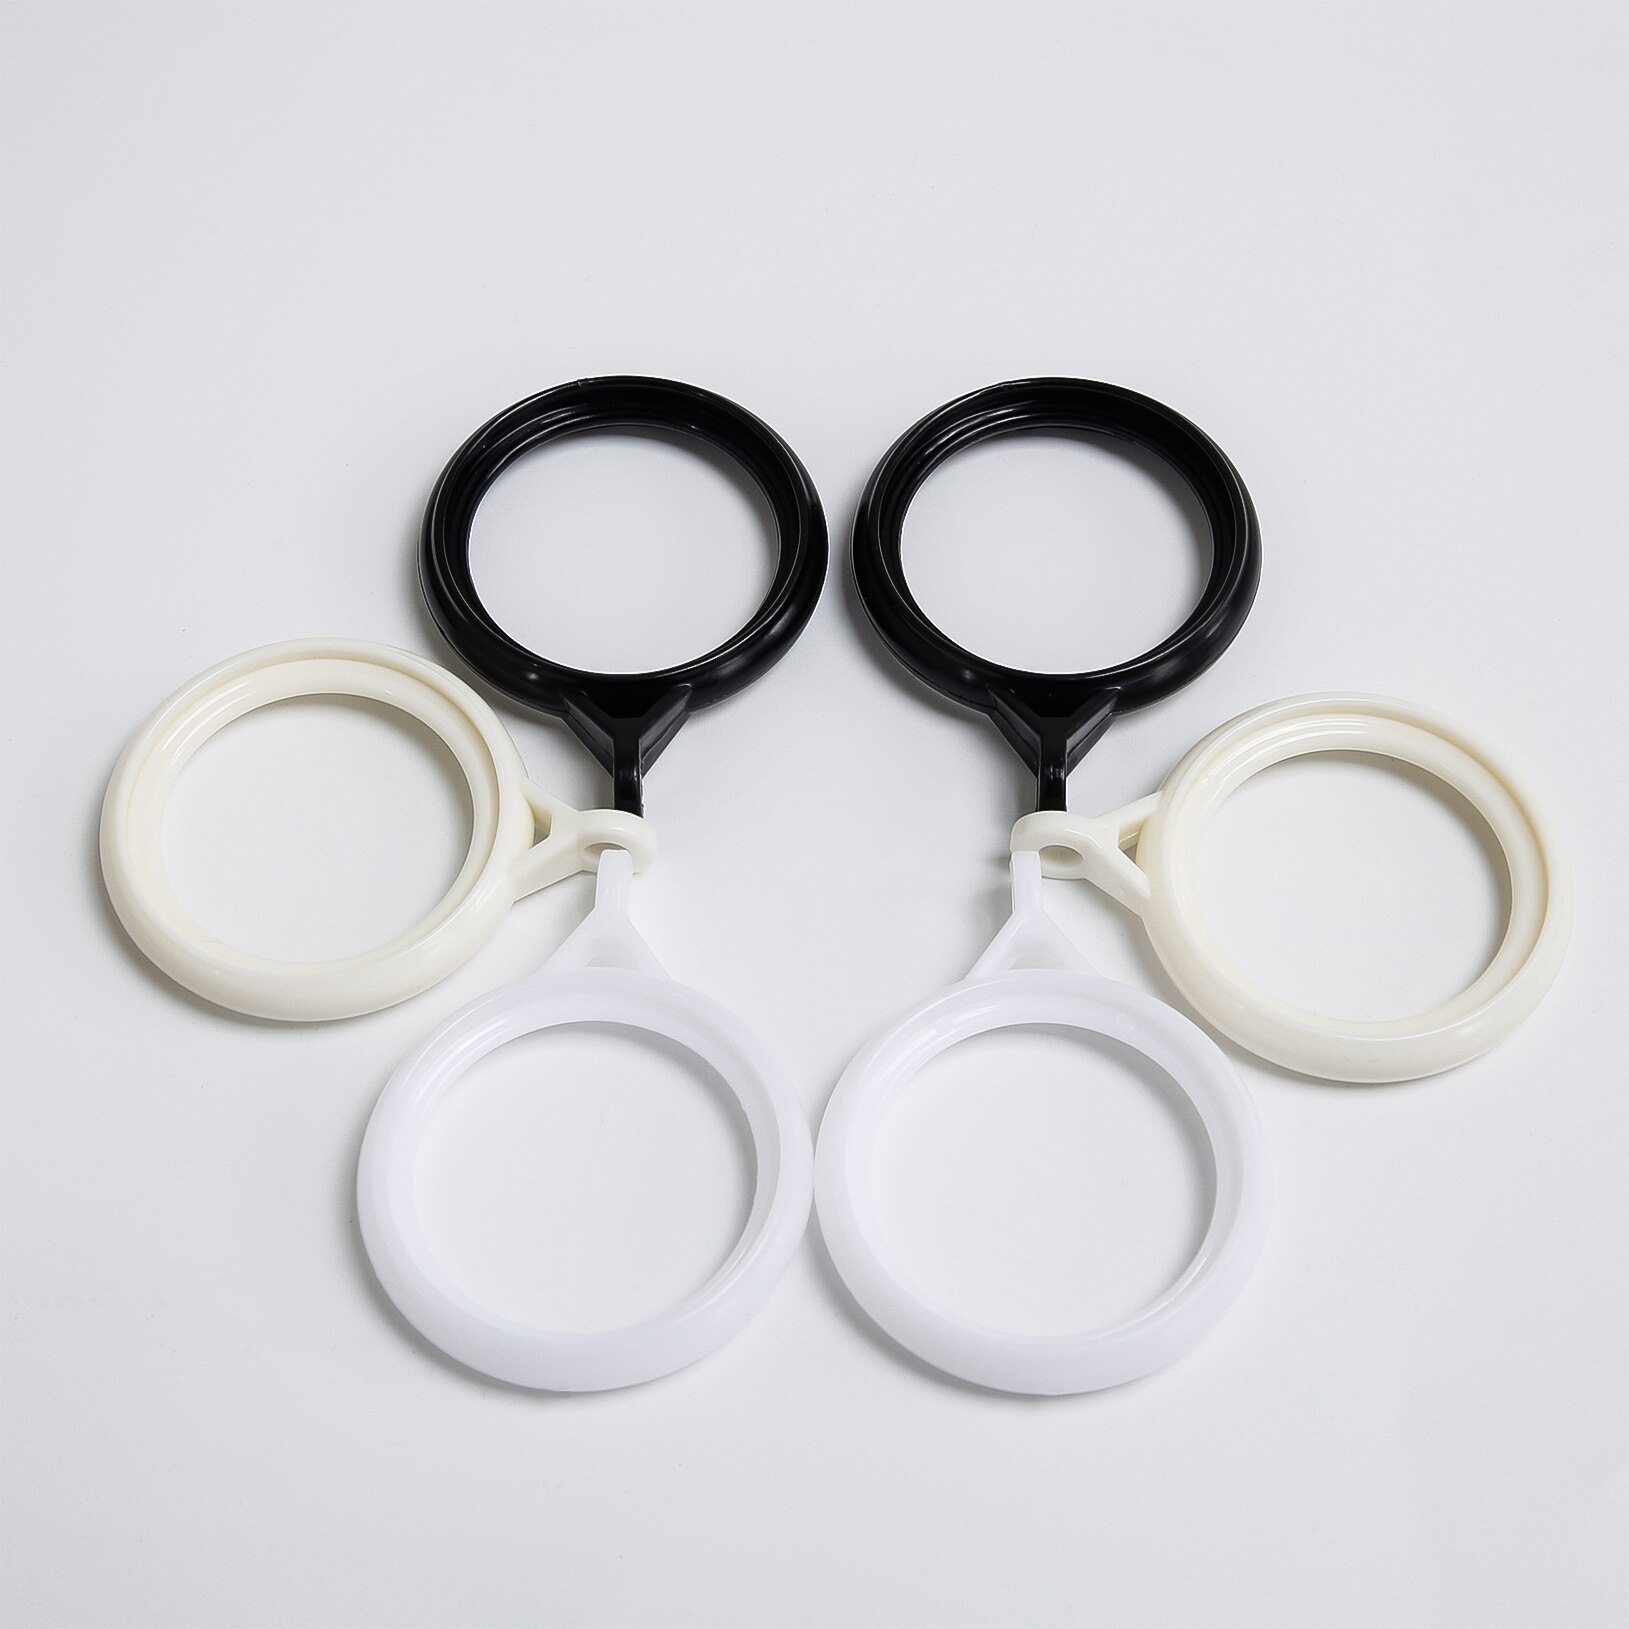 Topfinel Plastic Gordijn Ringen Opknoping Ringen Voor Gordijnen Decoratie Gordijn Accessoires Voor Ringen Top Grommet